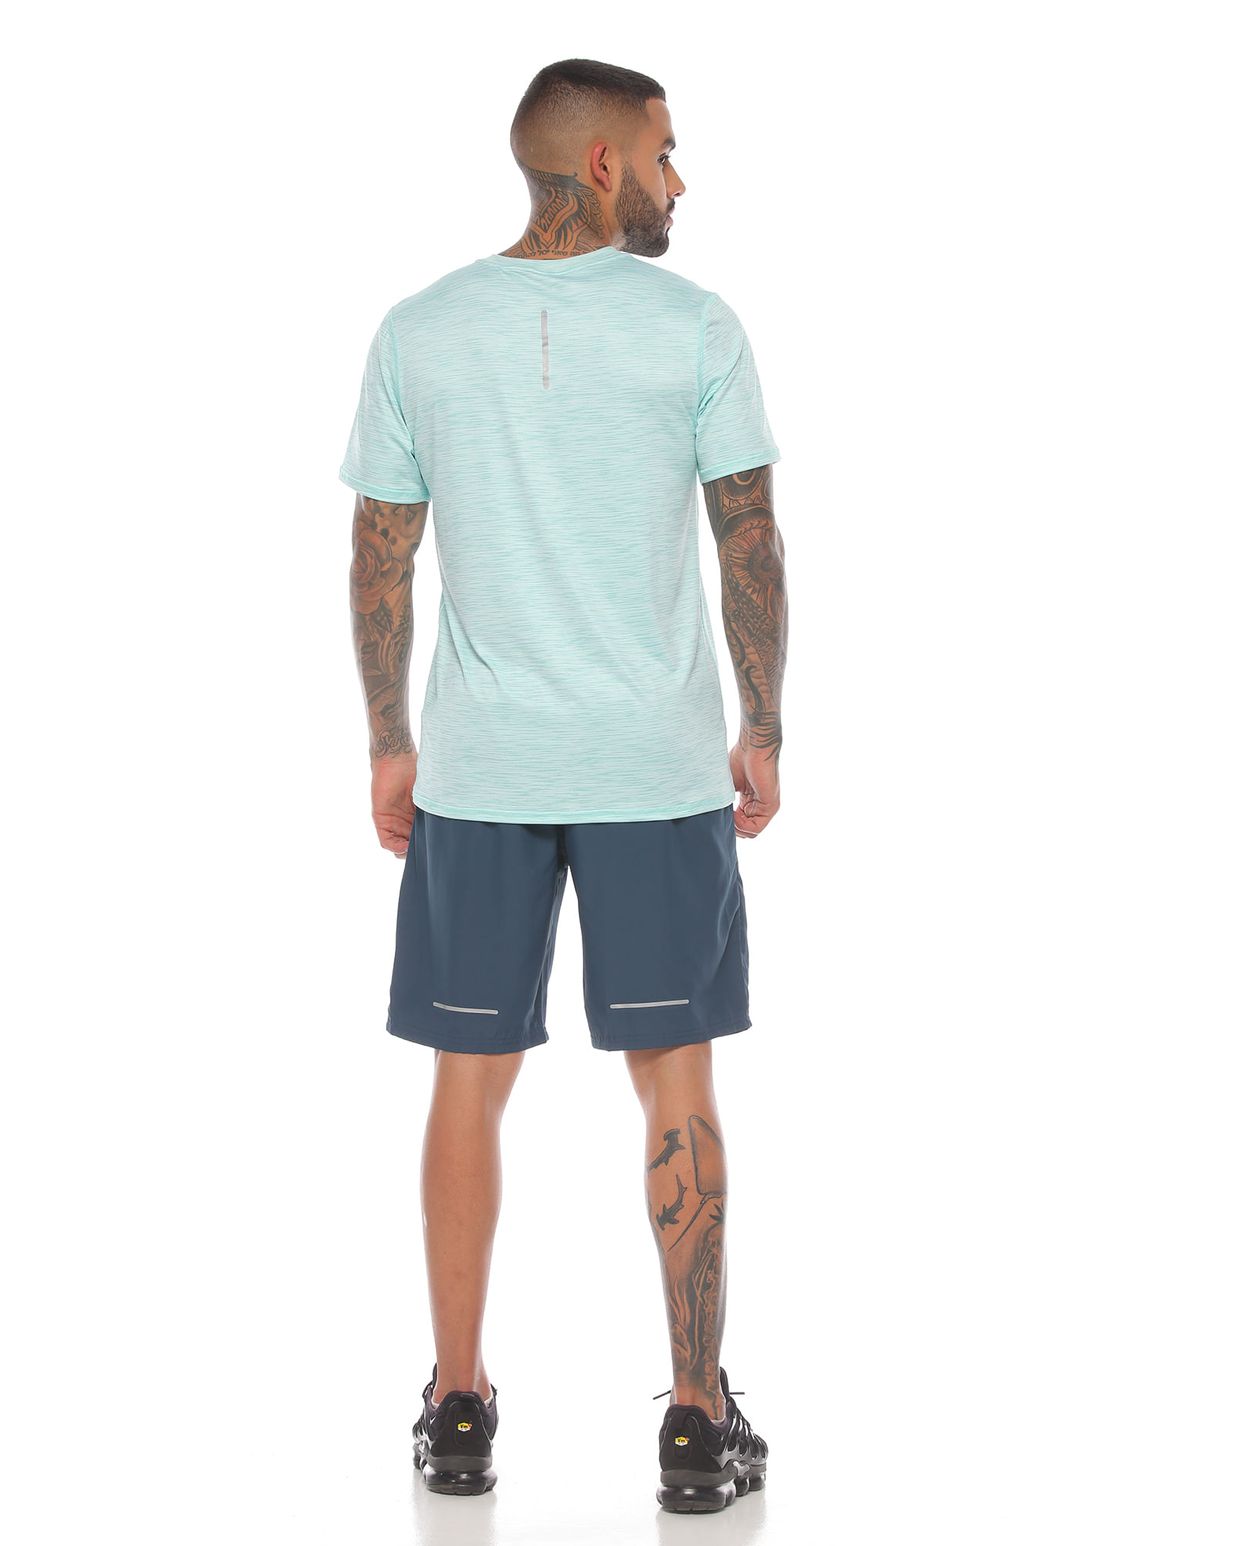 modelo con pantaloneta deportiva color petroleo y camiseta deportiva color verde para hombre cuerpo completo parte trasera